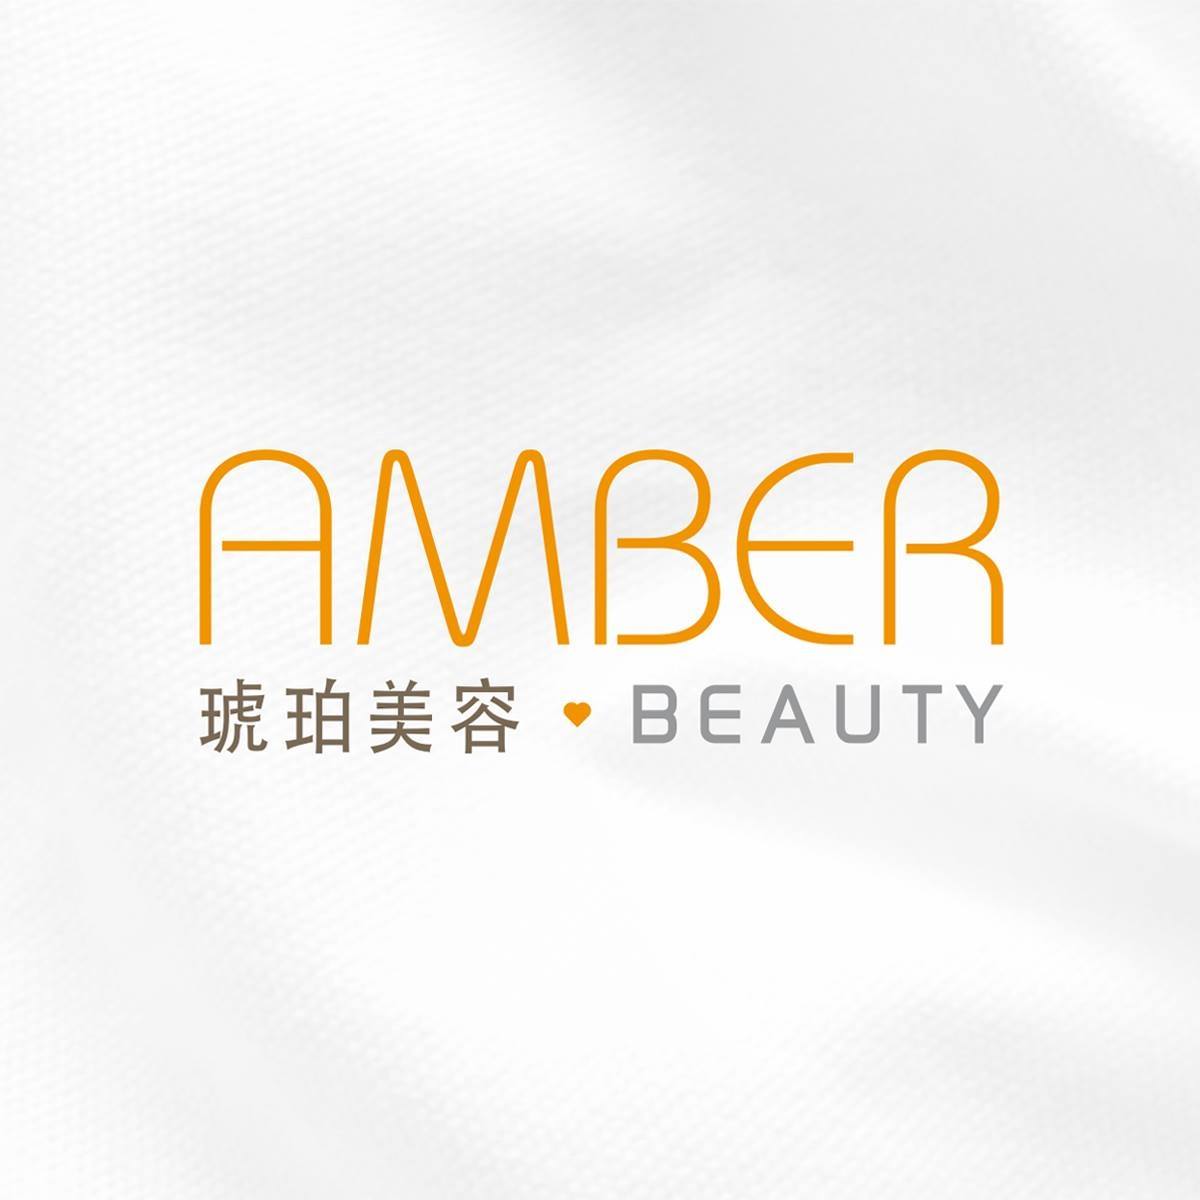 香港美容網 Hong Kong Beauty Salon 美容院 / 美容師: 琥珀美容 Amber Beauty (銅鑼灣店)